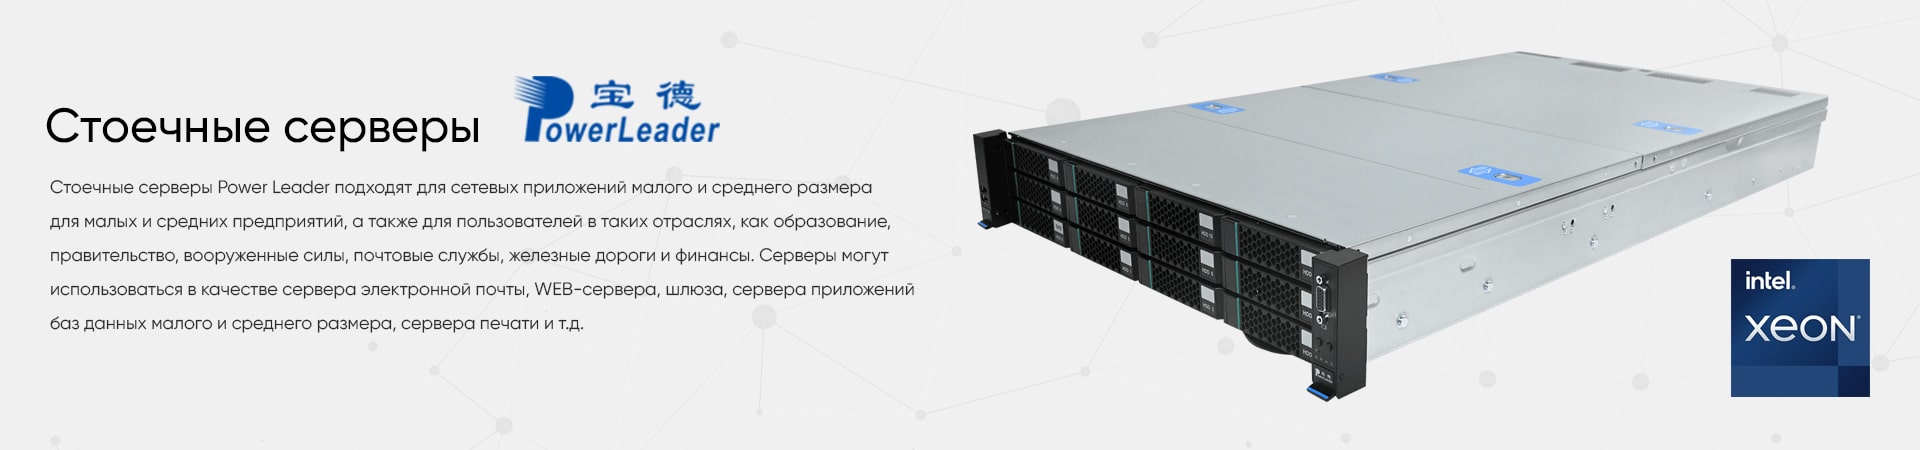 Стоечные серверы Power Leader купить Минск